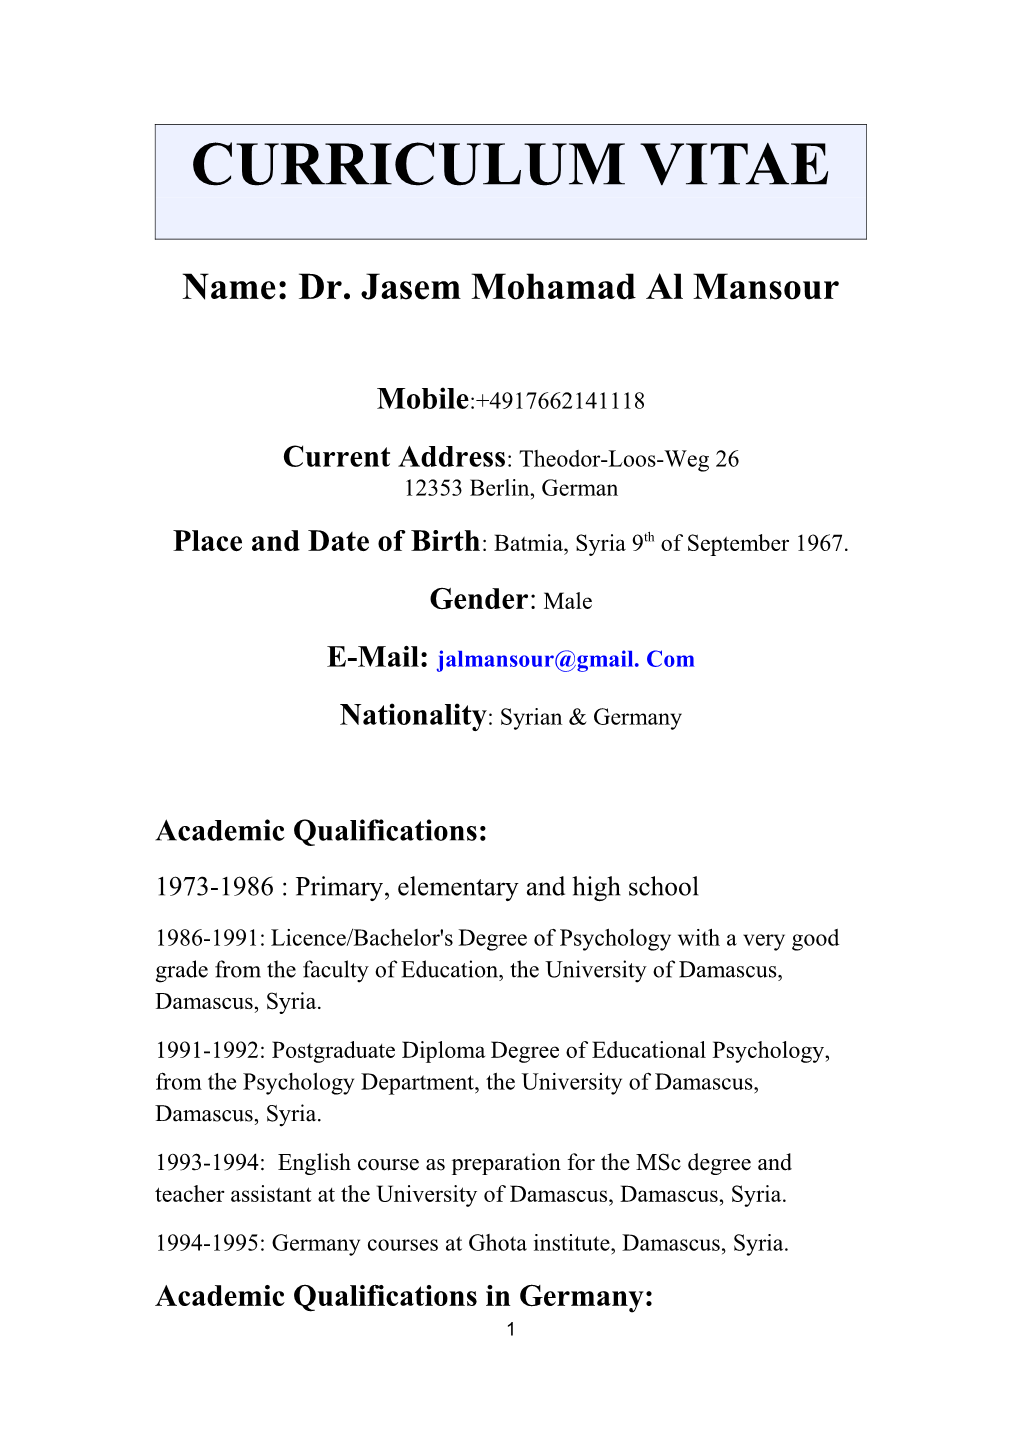 Name: Dr. Jasem Mohamad Al Mansour